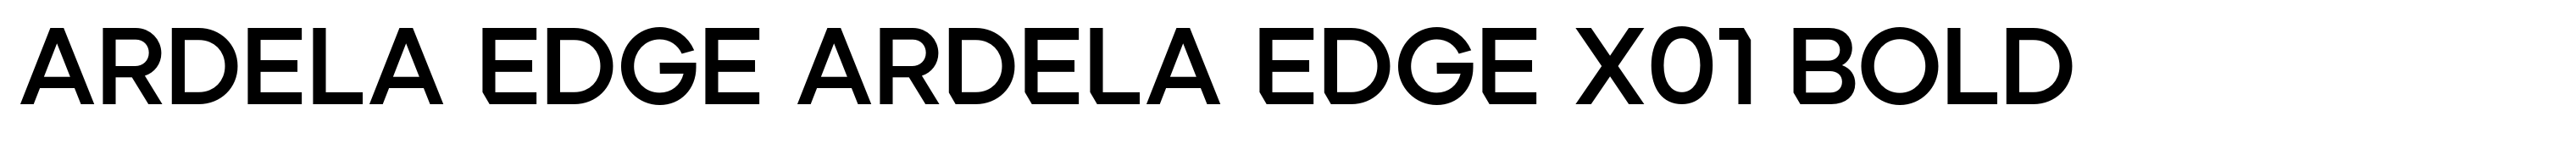 Ardela Edge ARDELA EDGE X01 Bold